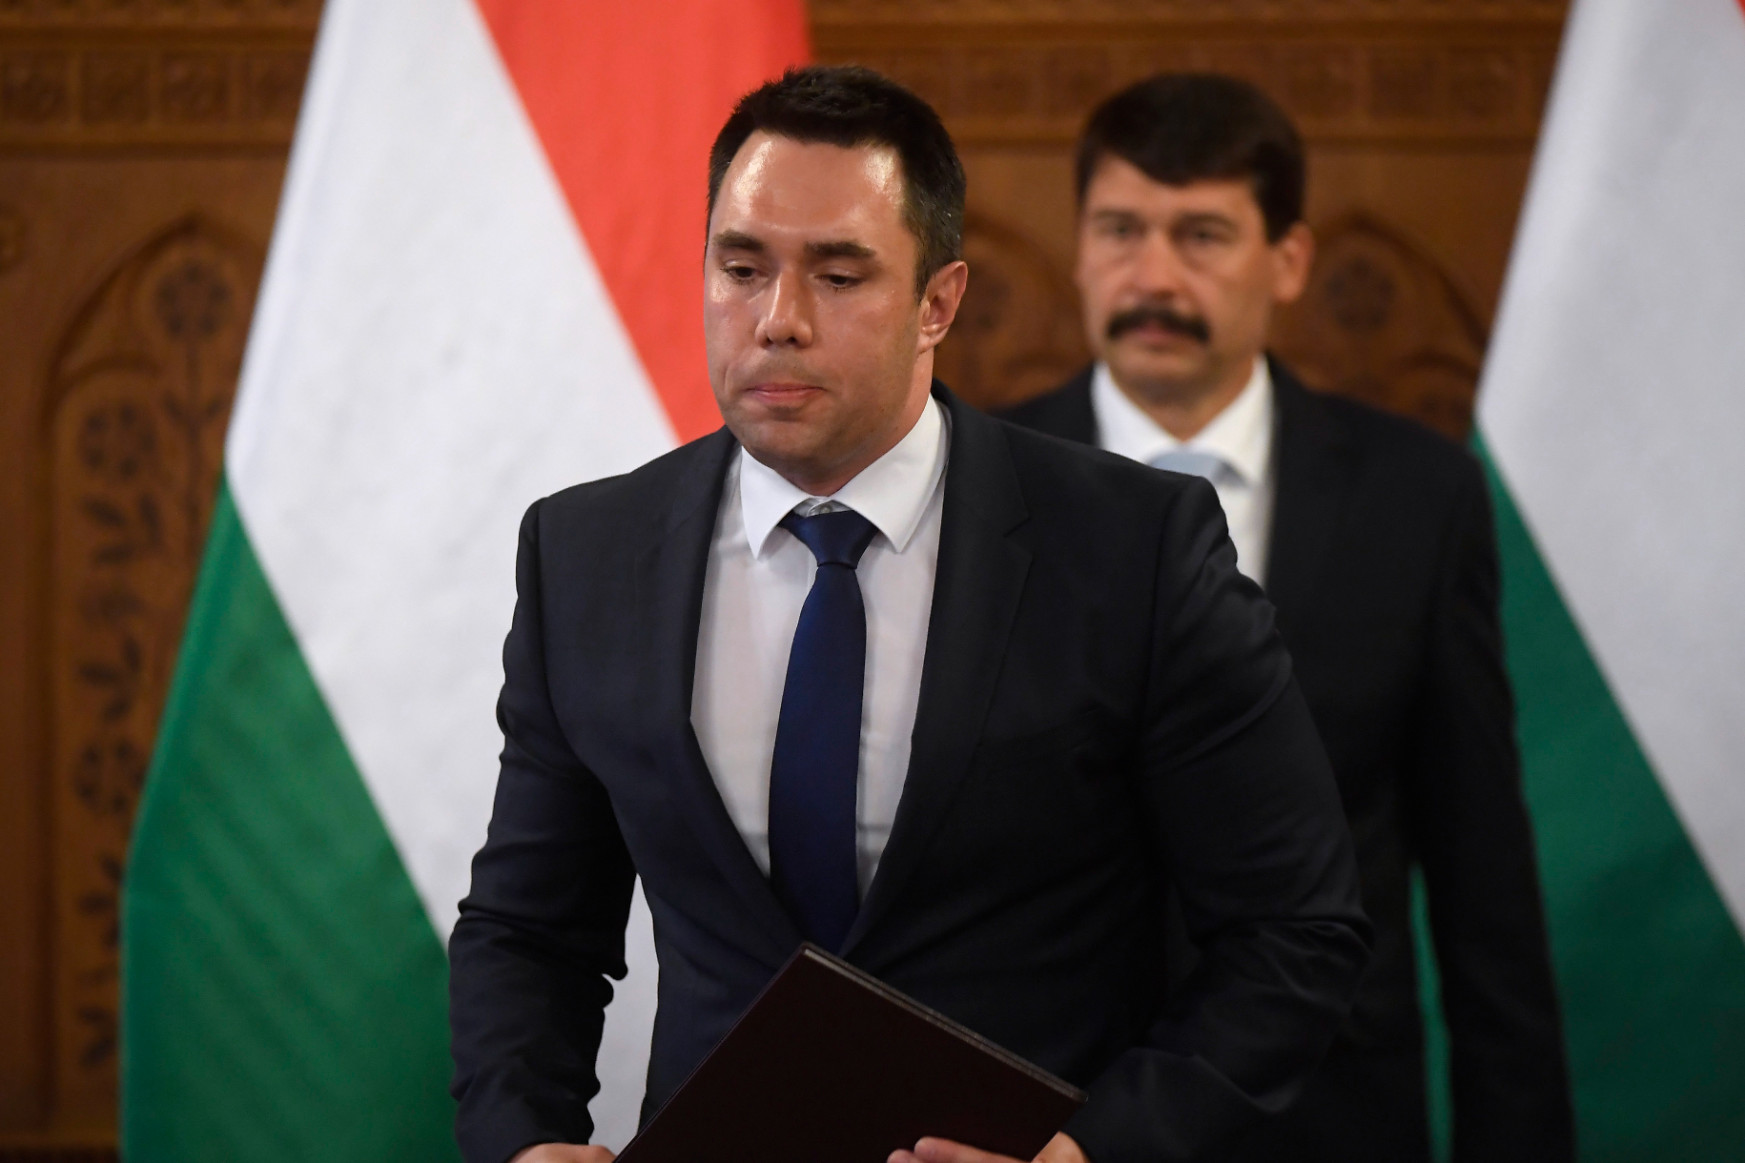 A Völner-botrány után Orbán Viktor bizalmasa újraszabályozta a bírósági végrehajtók kinevezését